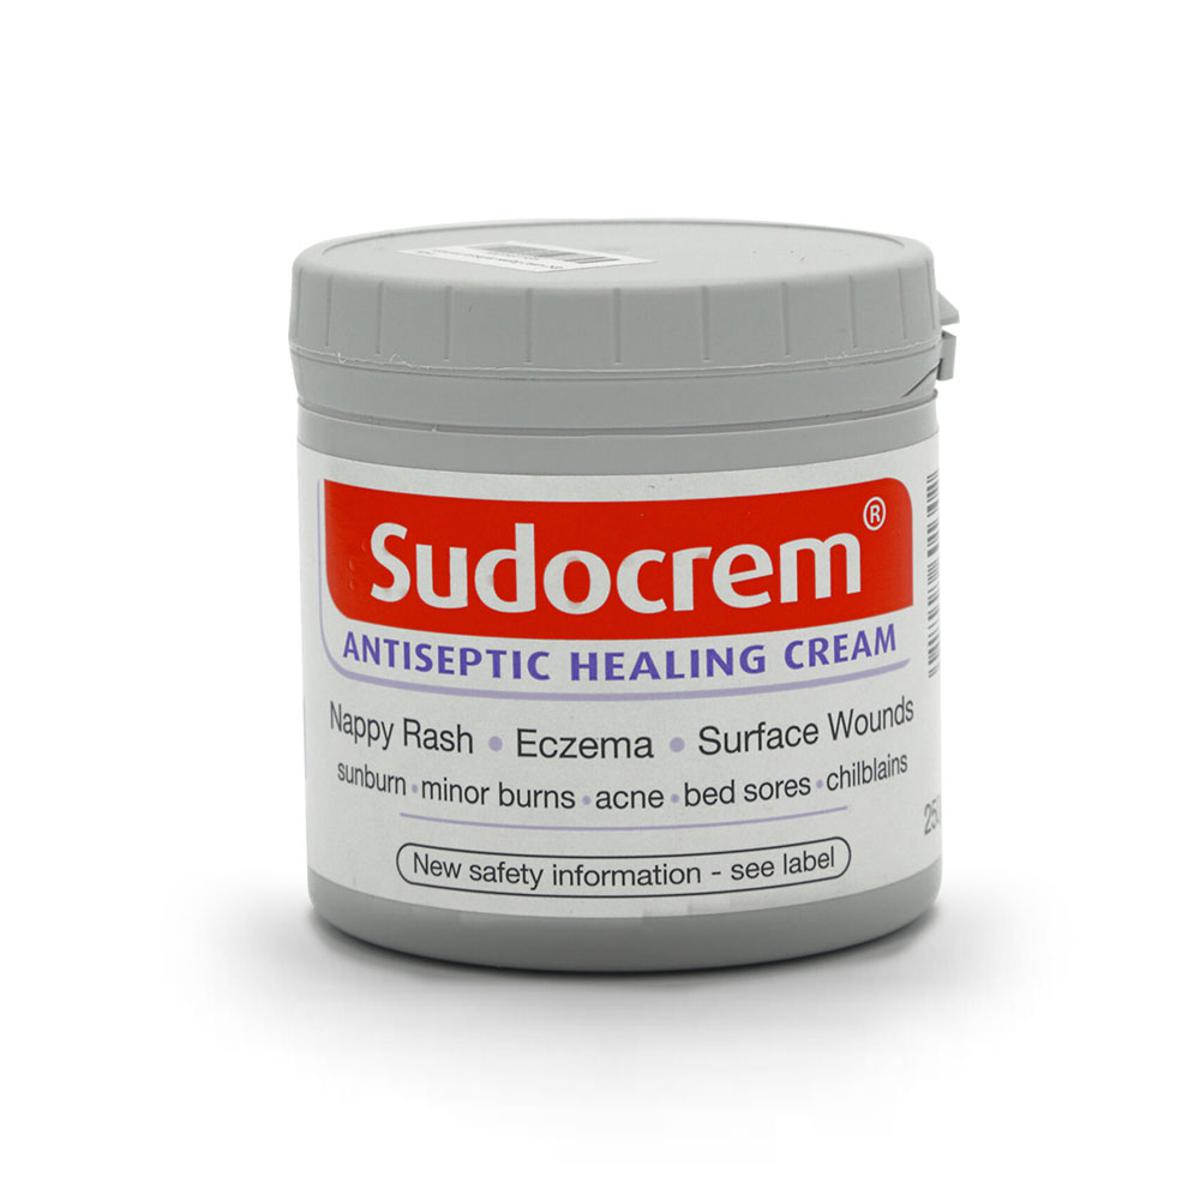 Sudo cream anti septic cream for healing